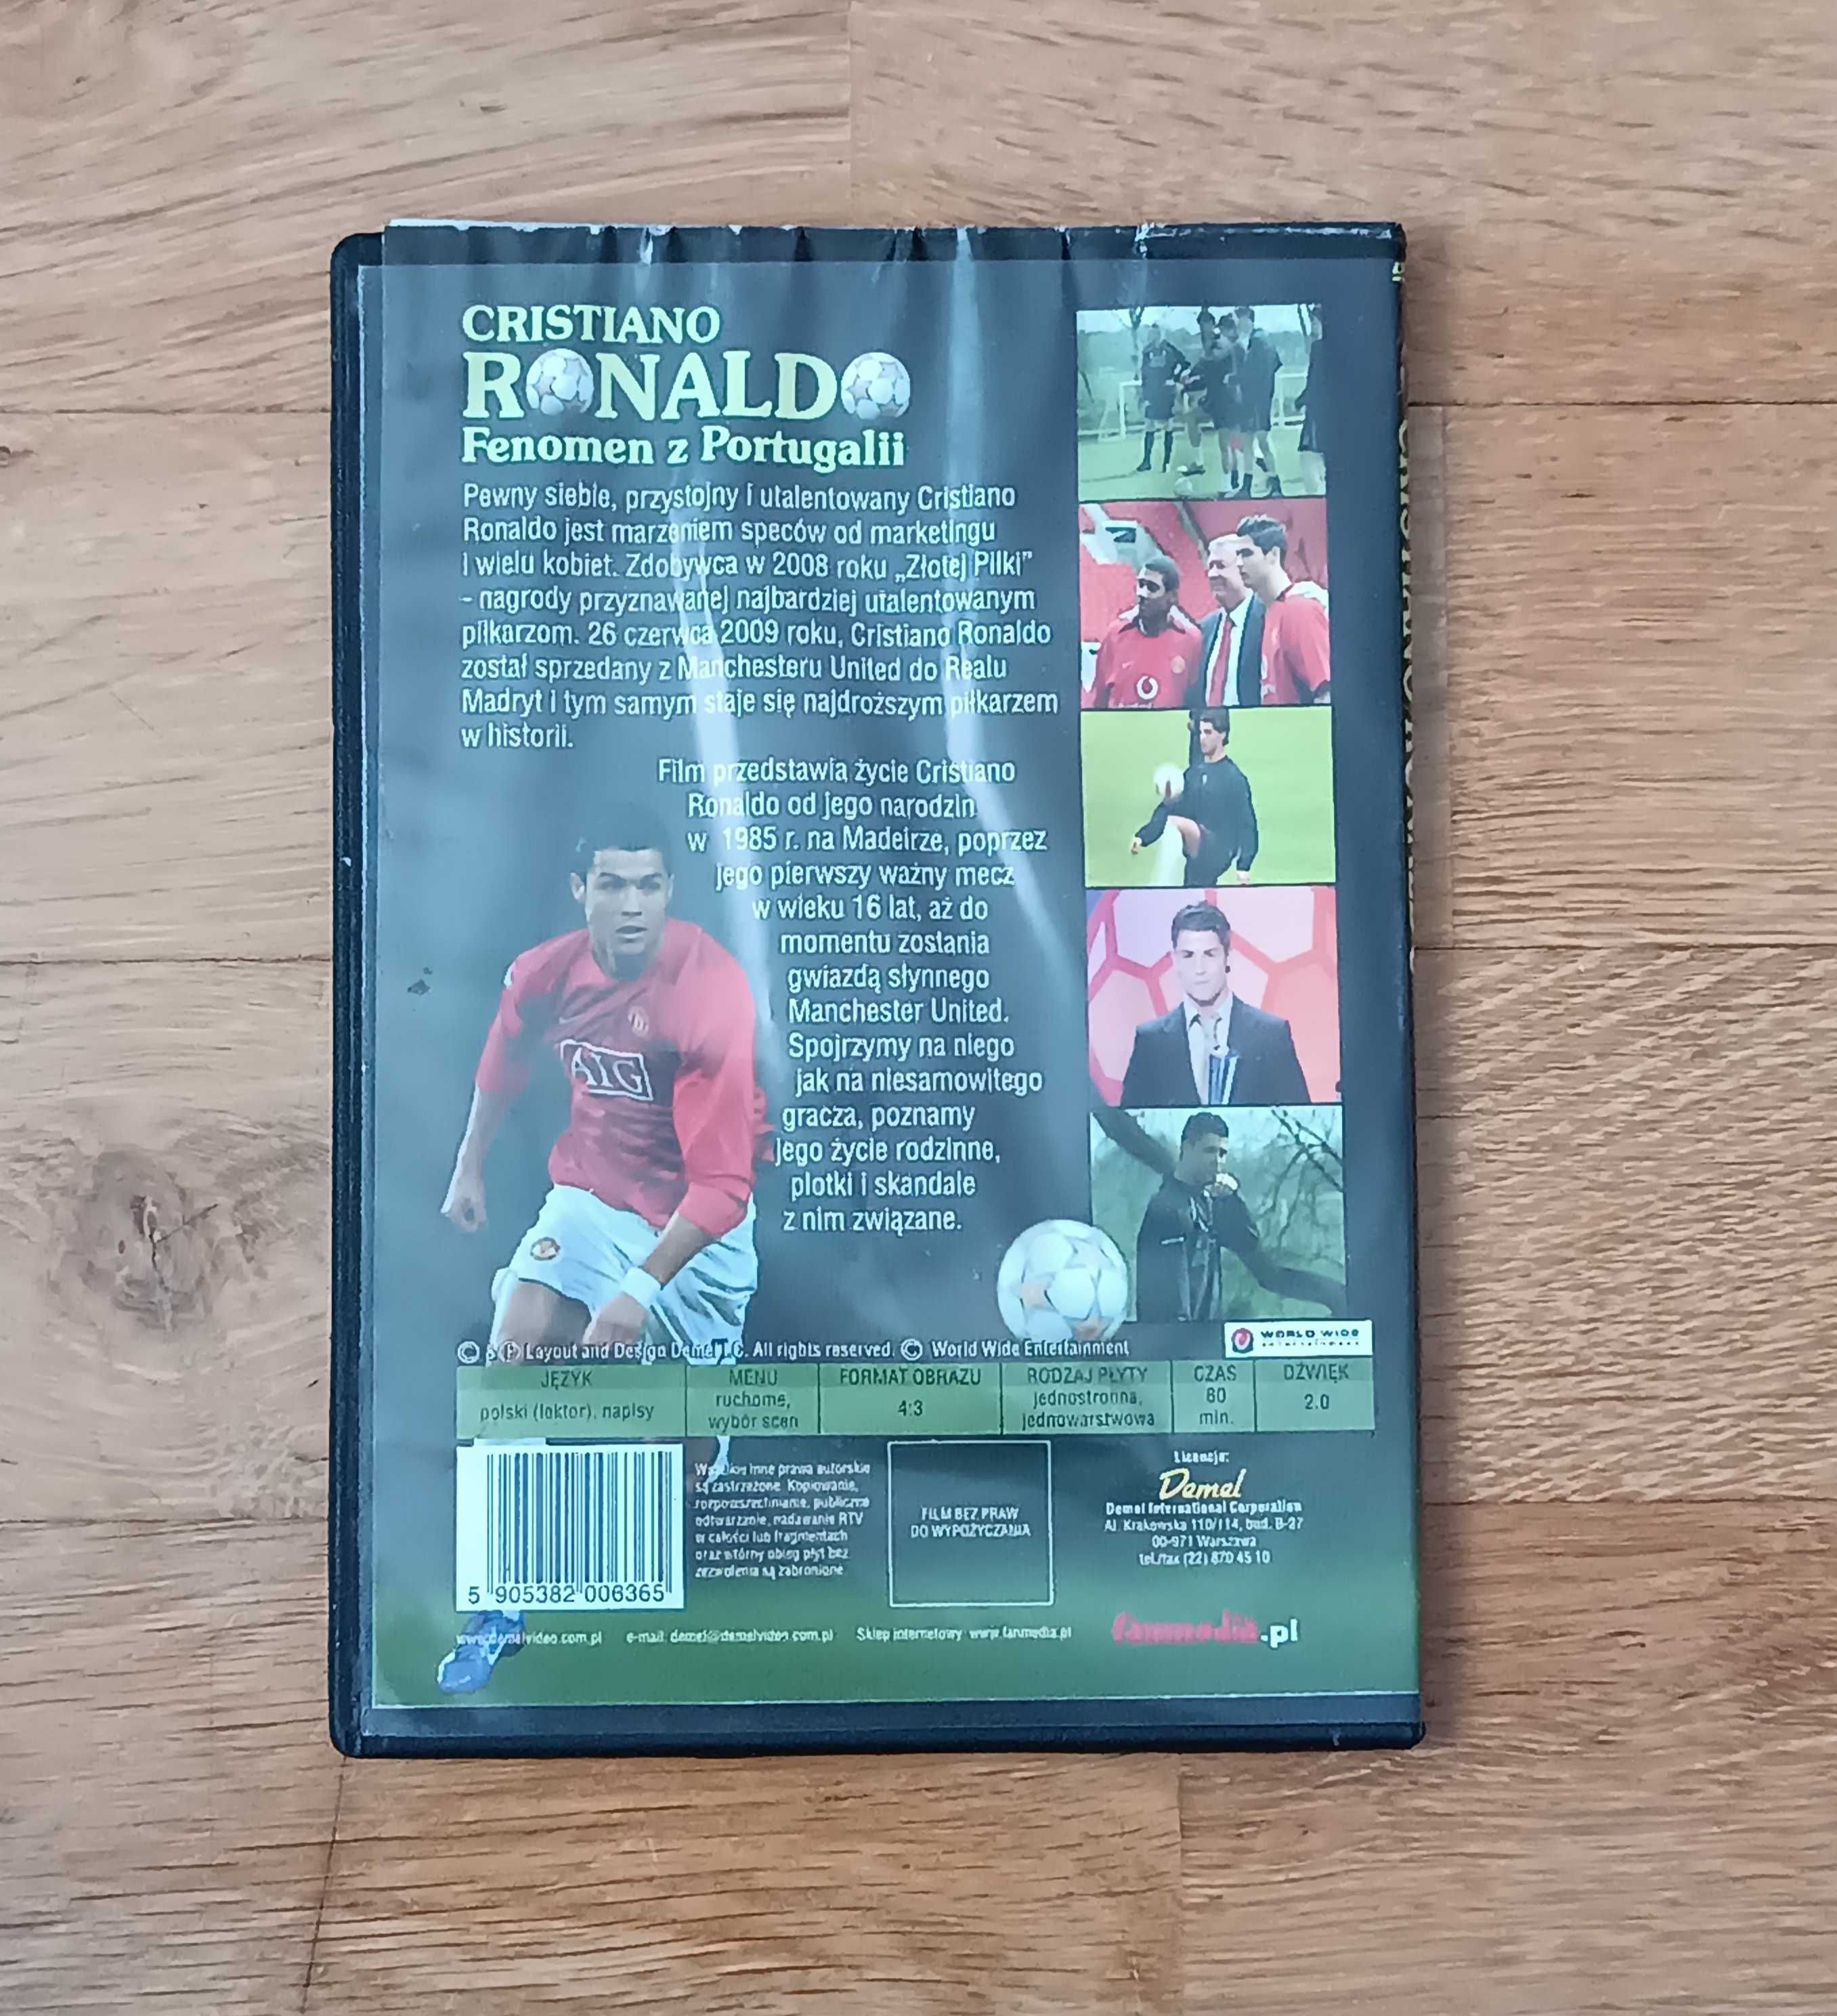 Cristiano Ronaldo Fenomen z Portugalii Film DVD Płyta CD piłkarz nożna